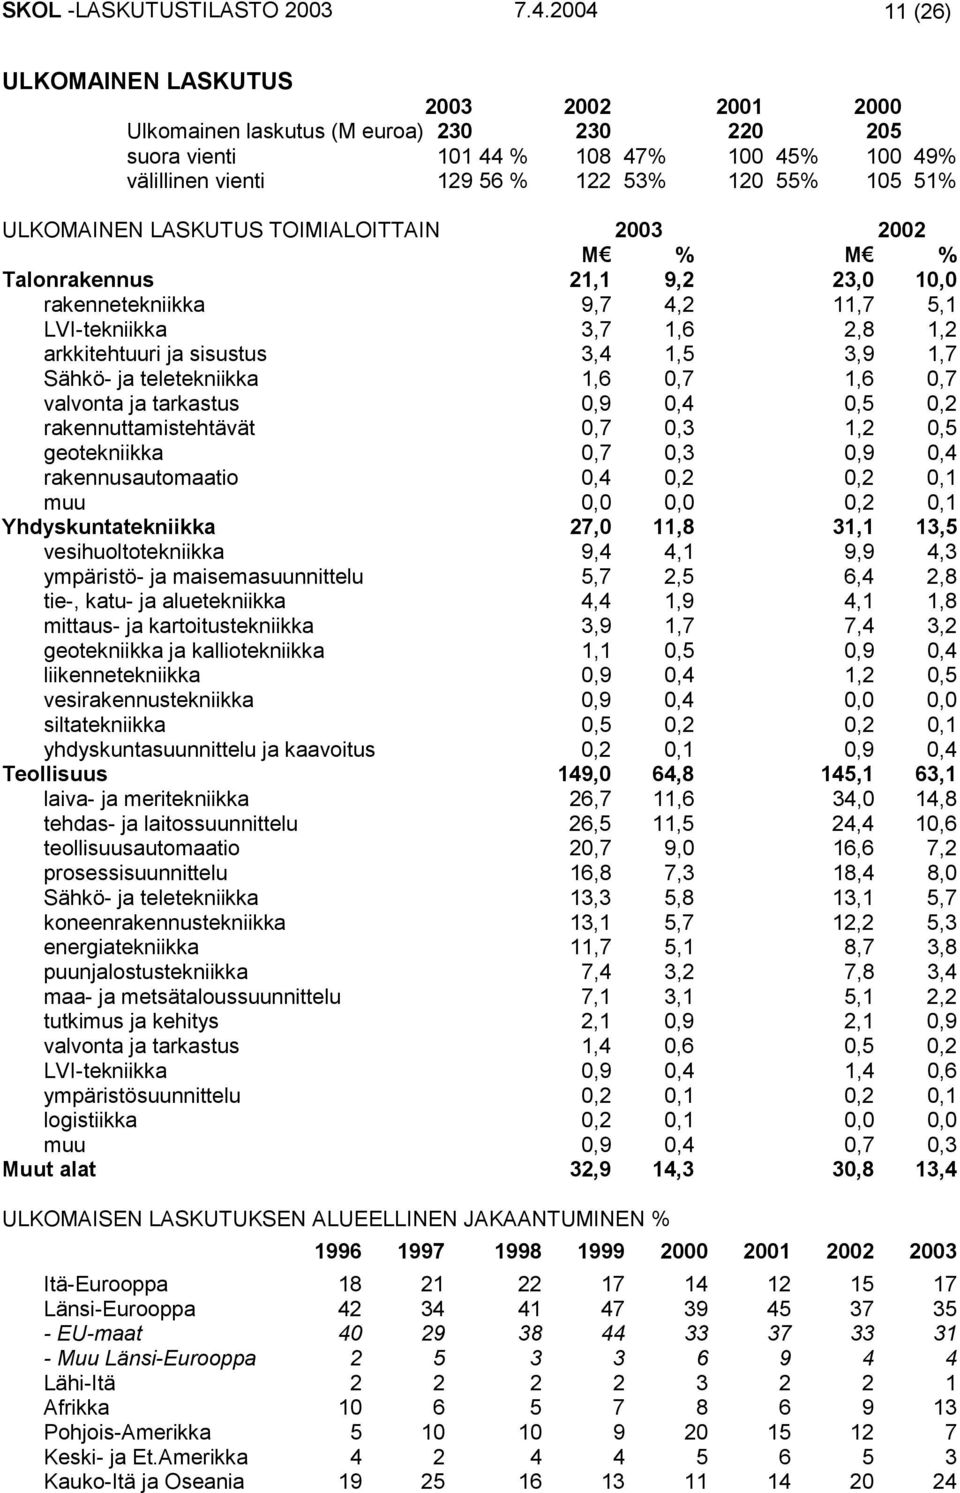 ULKOMAINEN LASKUTUS TOIMIALOITTAIN 2003 2002 M % M % Talonrakennus 21,1 9,2 23,0 10,0 rakennetekniikka 9,7 4,2 11,7 5,1 LVI-tekniikka 3,7 1,6 2,8 1,2 arkkitehtuuri ja sisustus 3,4 1,5 3,9 1,7 Sähkö-